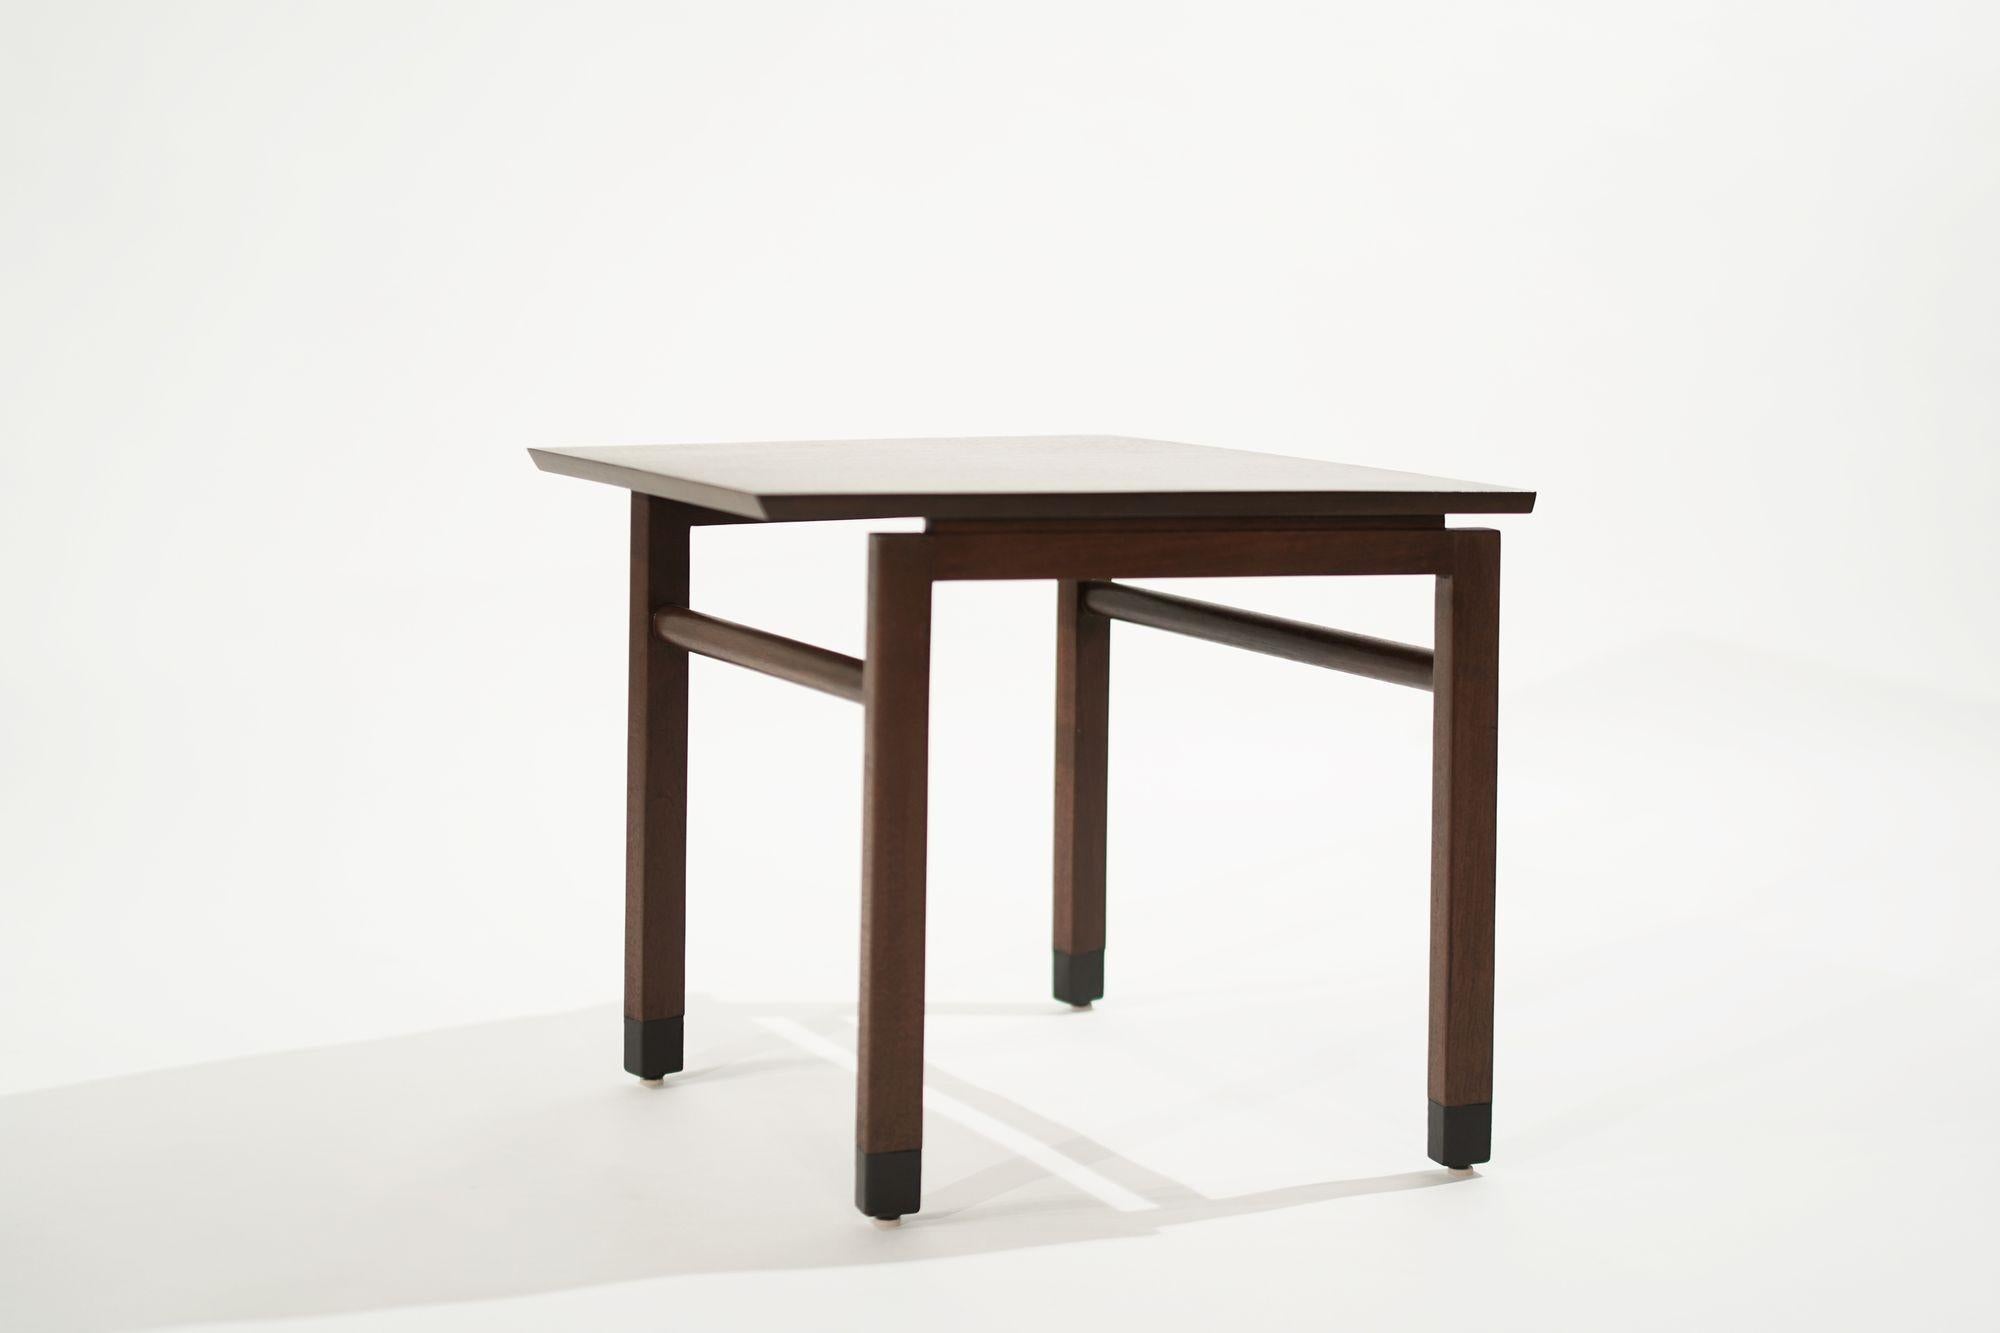 La table d'appoint Wedge, rarement trouvée, conçue par Edward Wormely pour Dunbar, vers 1950-1959. Exécuté en noyer, il présente des pieds gainés de cuir. Entièrement restauré.
 
Parmi les autres designers de cette période figurent Paul McCobb,